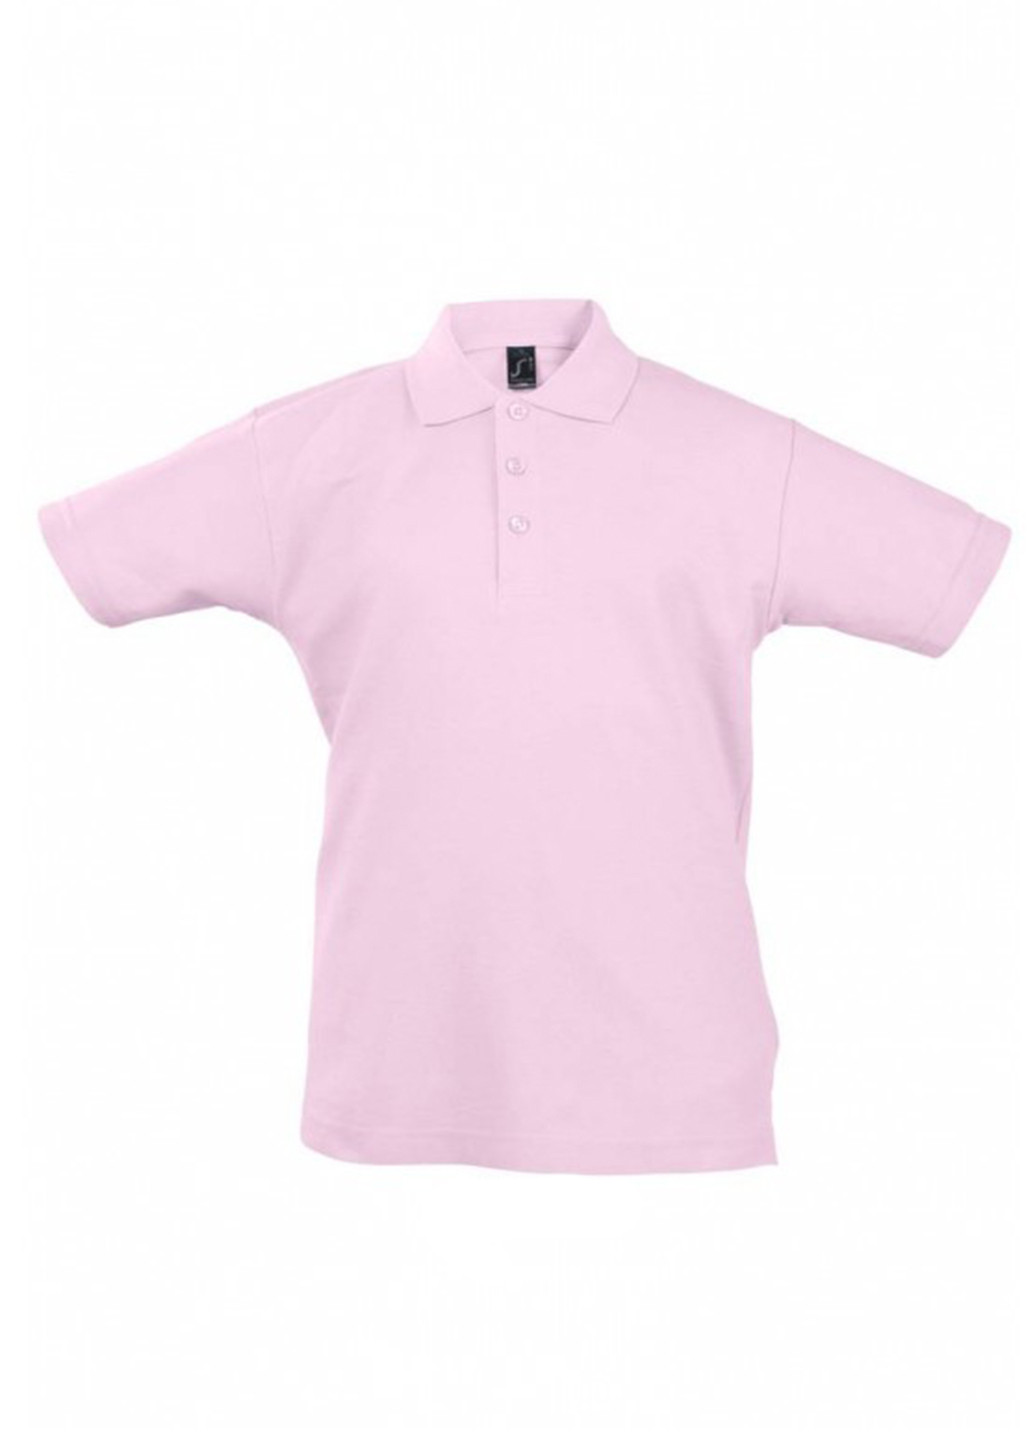 Светло-розовая детская футболка-поло для девочки Sol's однотонная